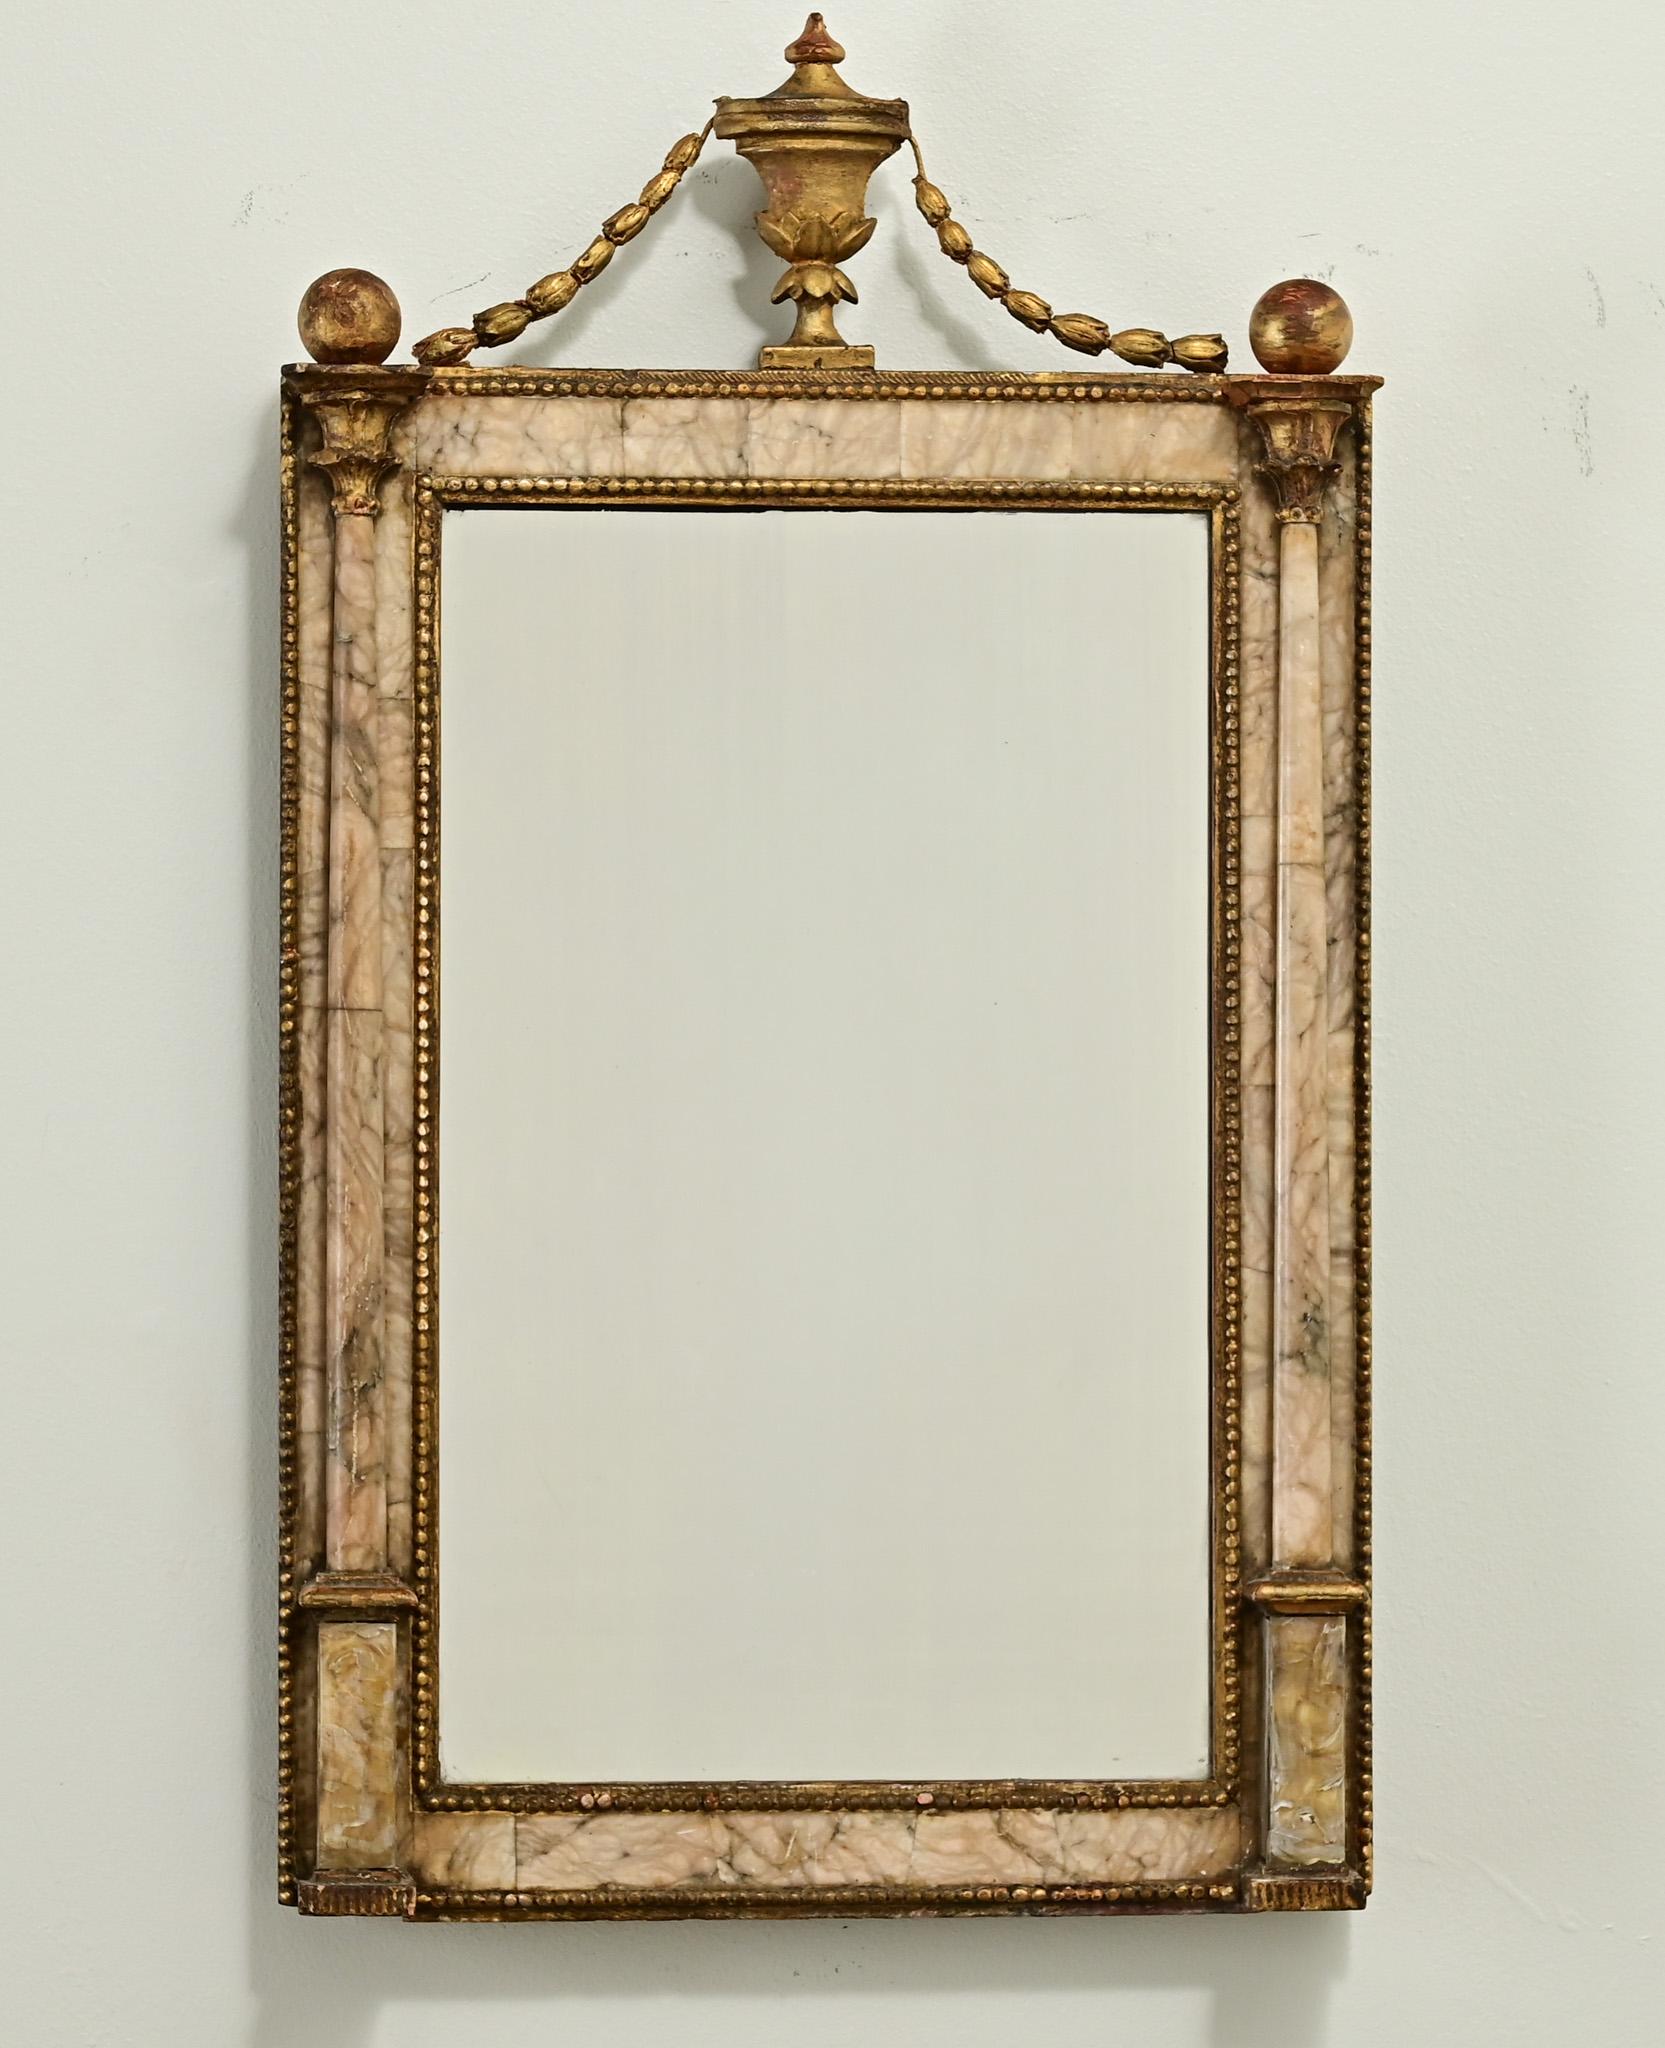 Un petit et unique miroir en albâtre du 19ème siècle en France. La partie supérieure est ornée d'une urne dorée avec des guirlandes et des boules. Le cadre du miroir en albâtre sculpté et appliqué est orné d'une garniture en laiton perlé et de